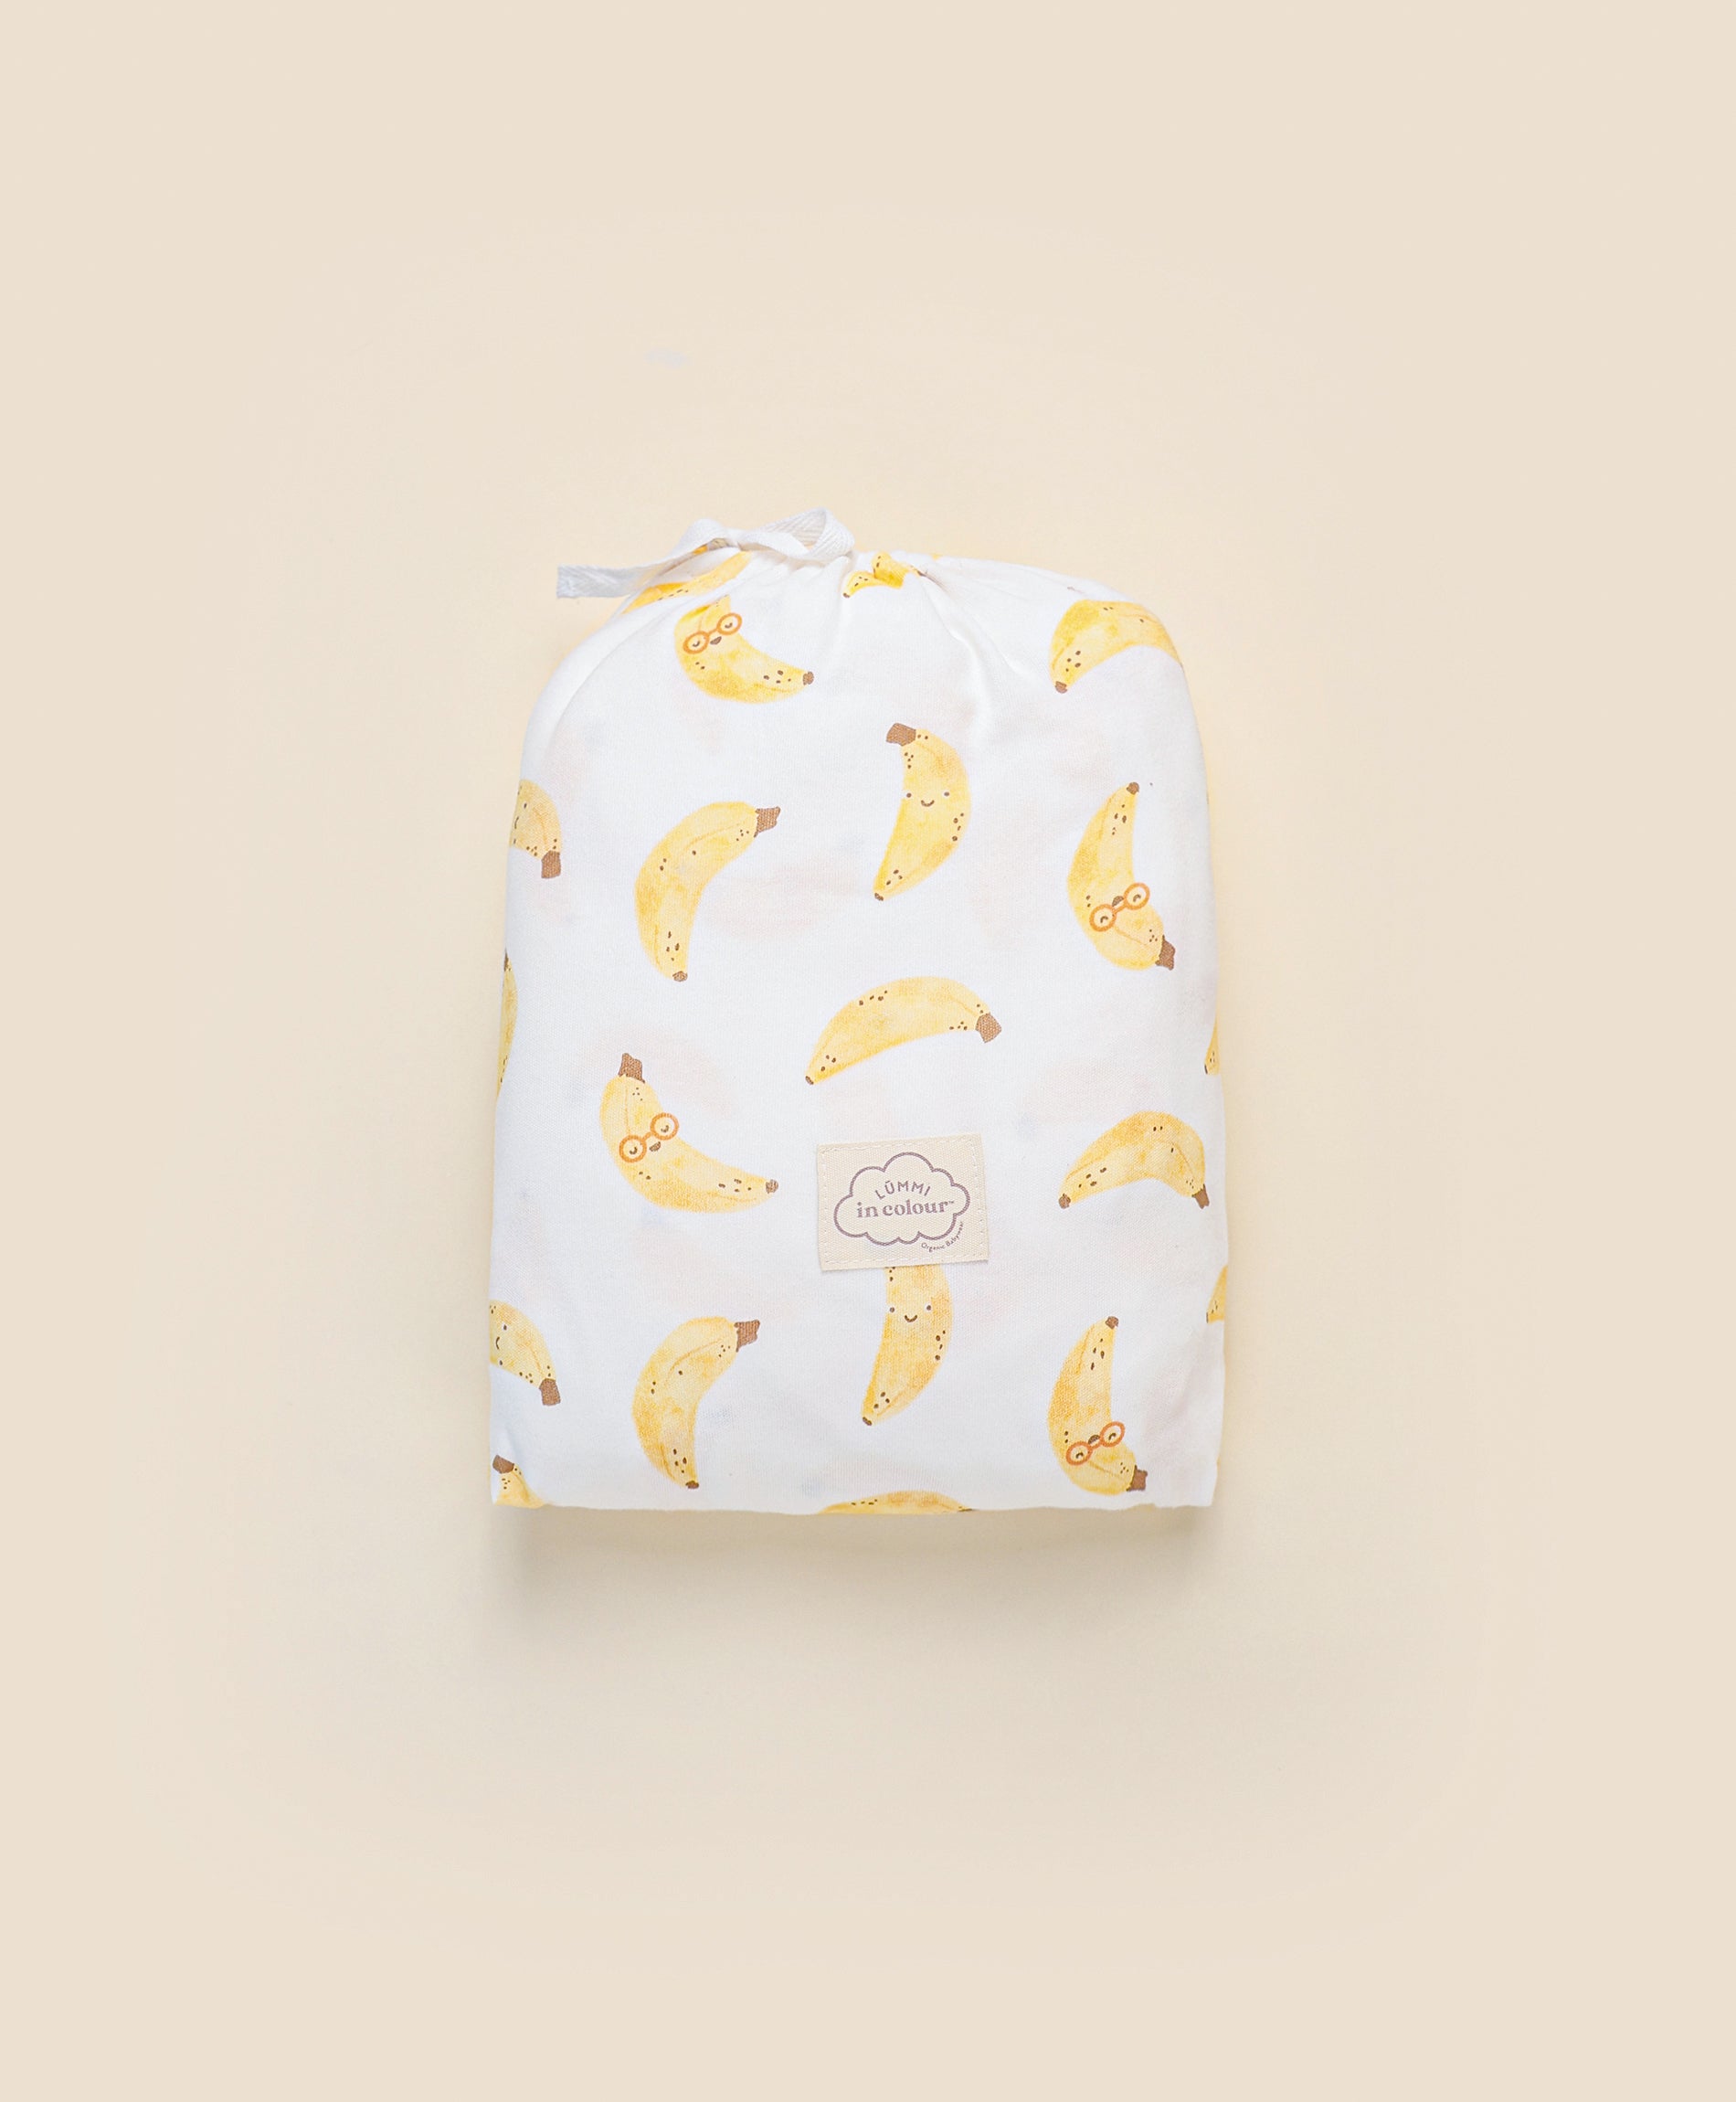 Cot sheet - Bananas